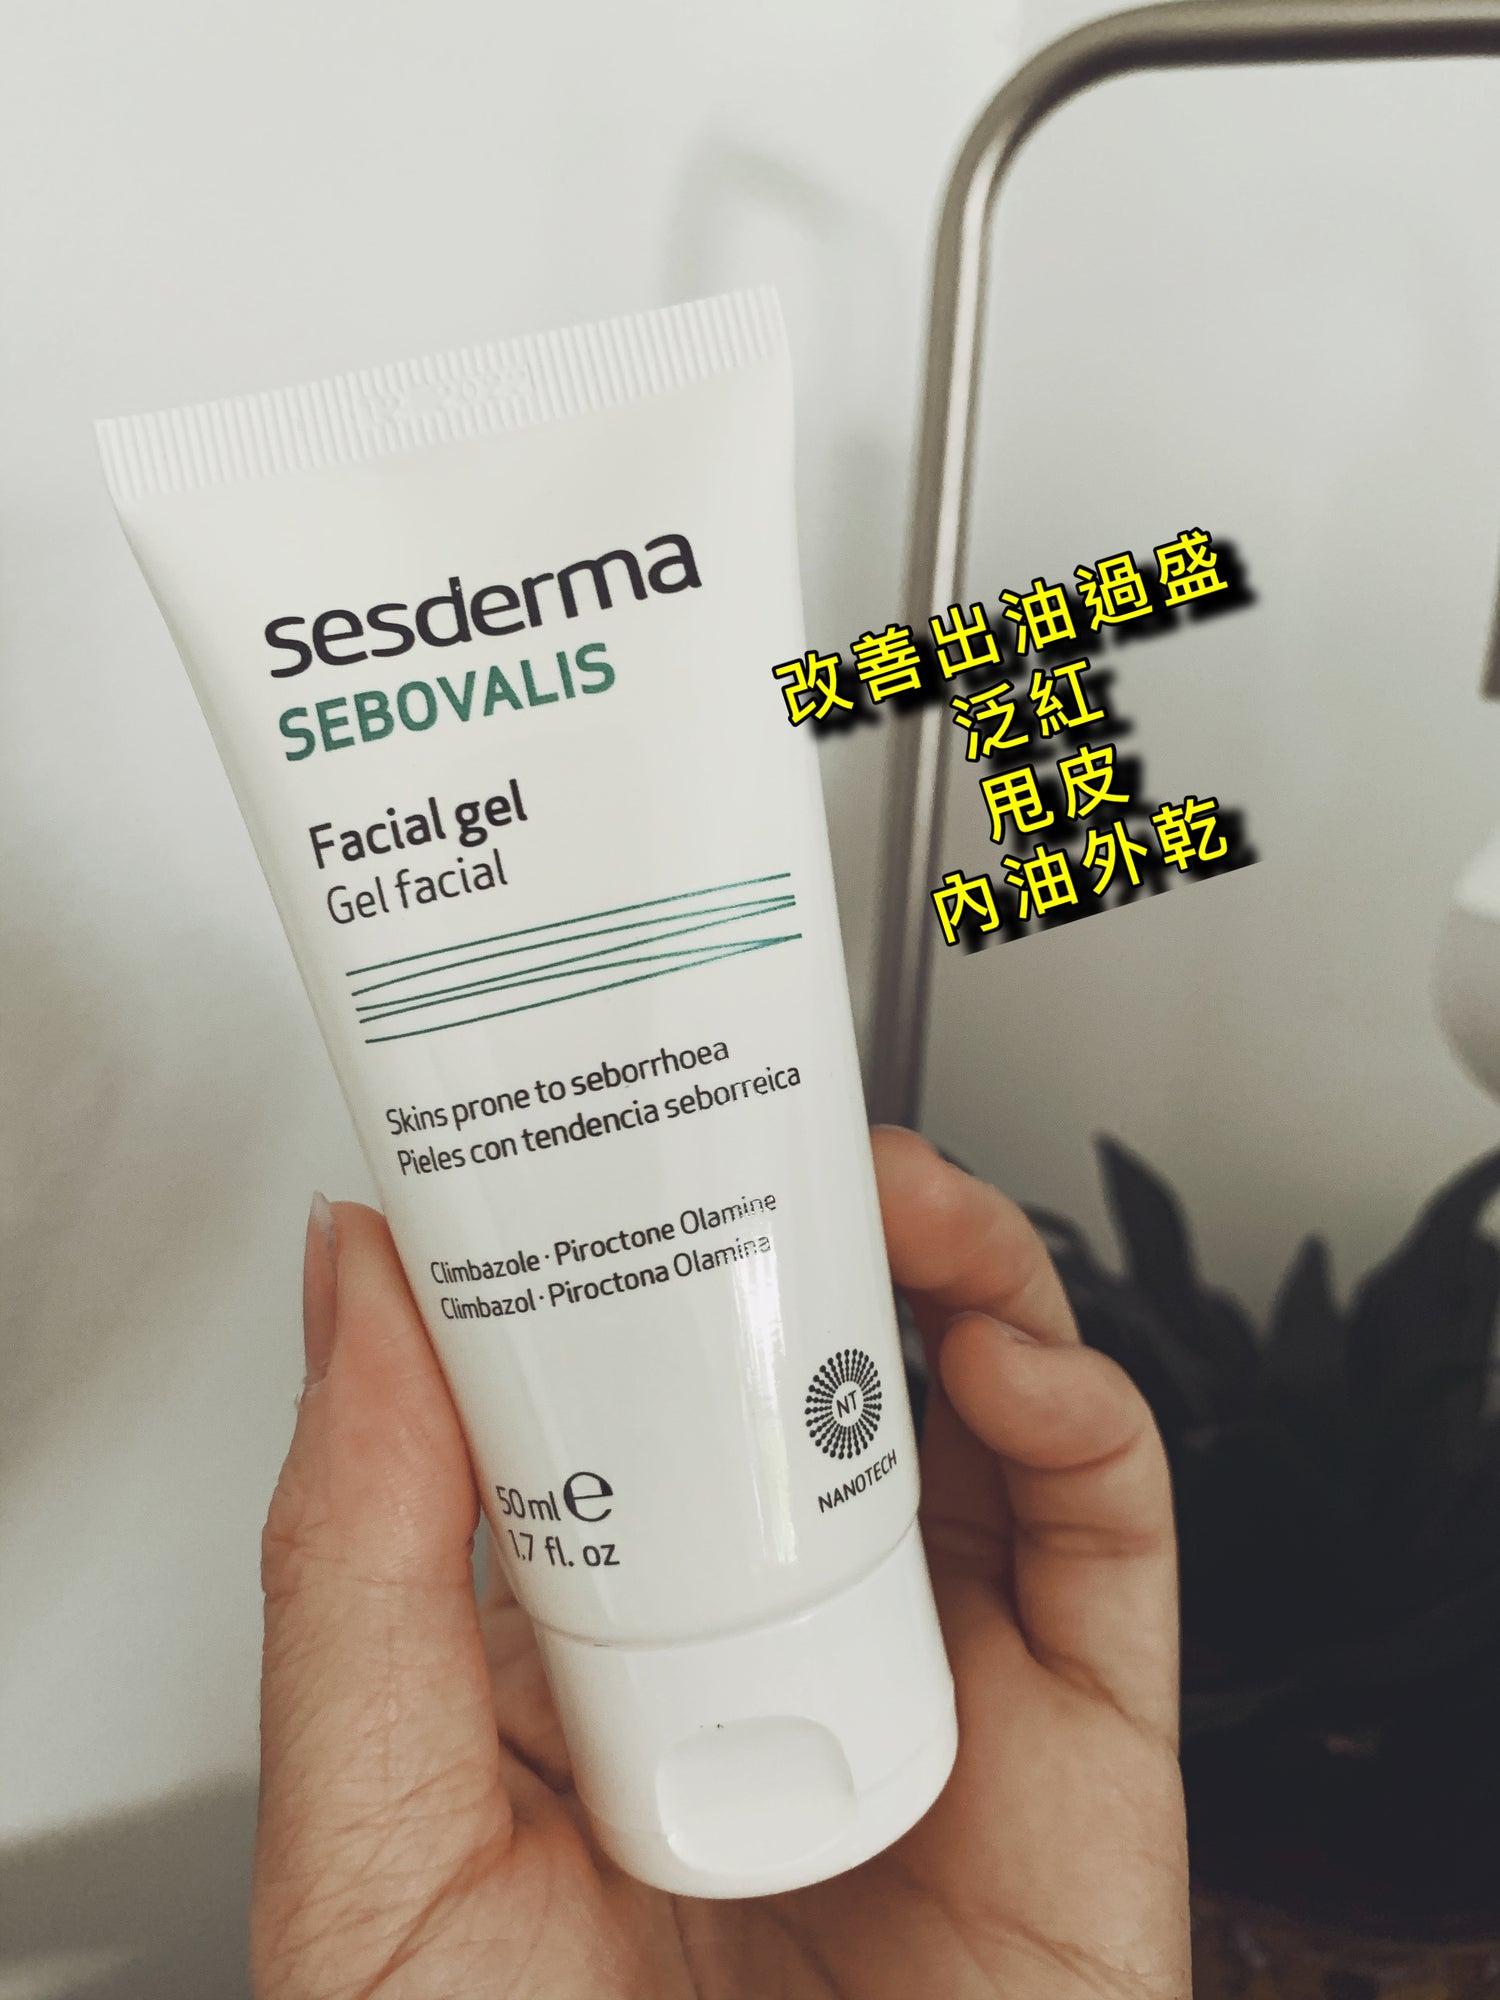 西班牙Sesderma Sebovalis Facial Gel - buy European skincare in Hong Kong - 1click2beauty